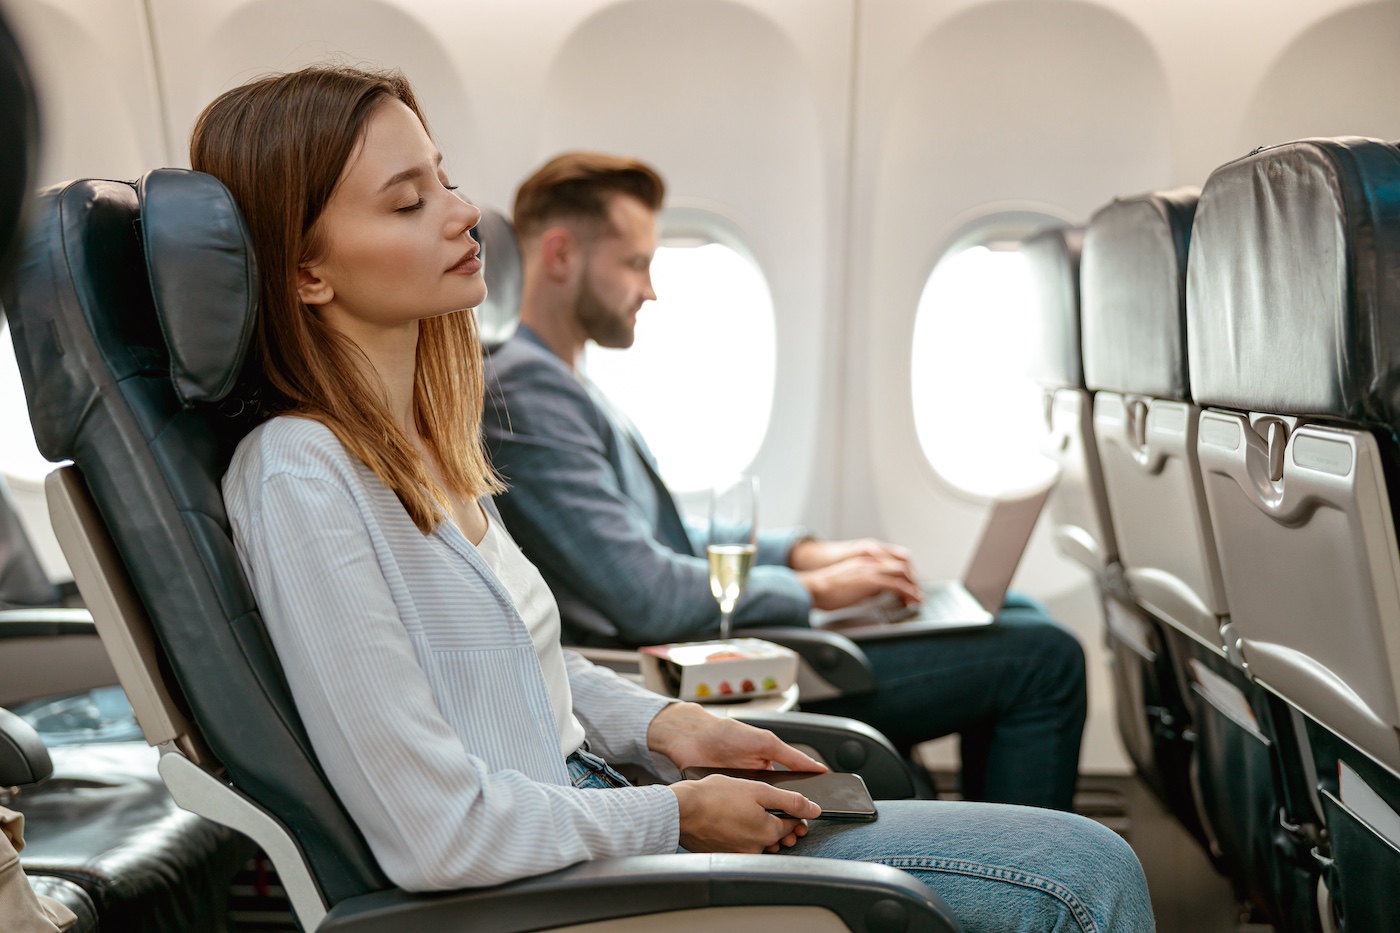 Lager en trager vliegen vrouw passagier slaapt tijdens vlucht in vliegtuig